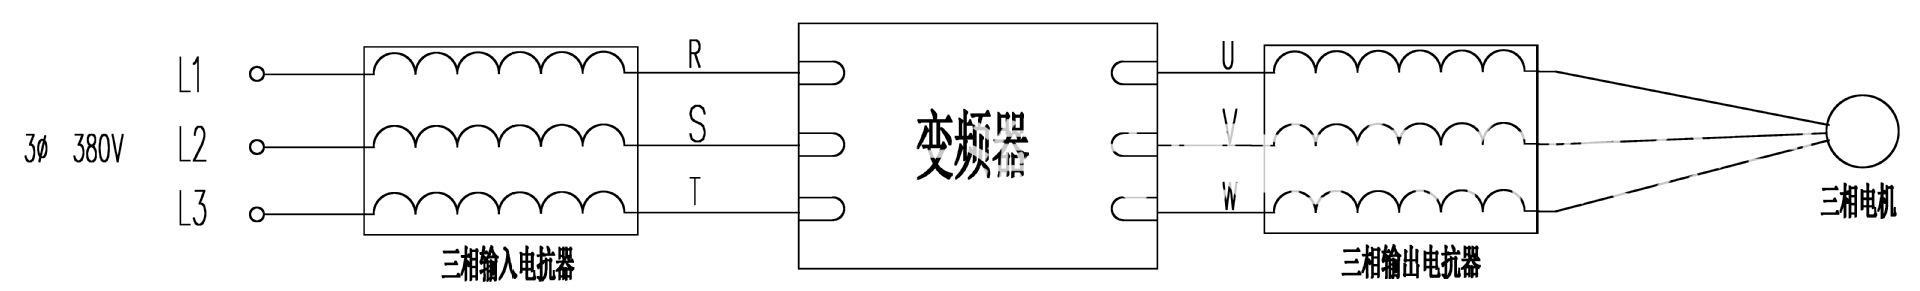 上海昌日CXL-15A/1%输出电抗器 输出电抗器,出线电抗器,昌日电抗器,CXL电抗器,铁芯电抗器